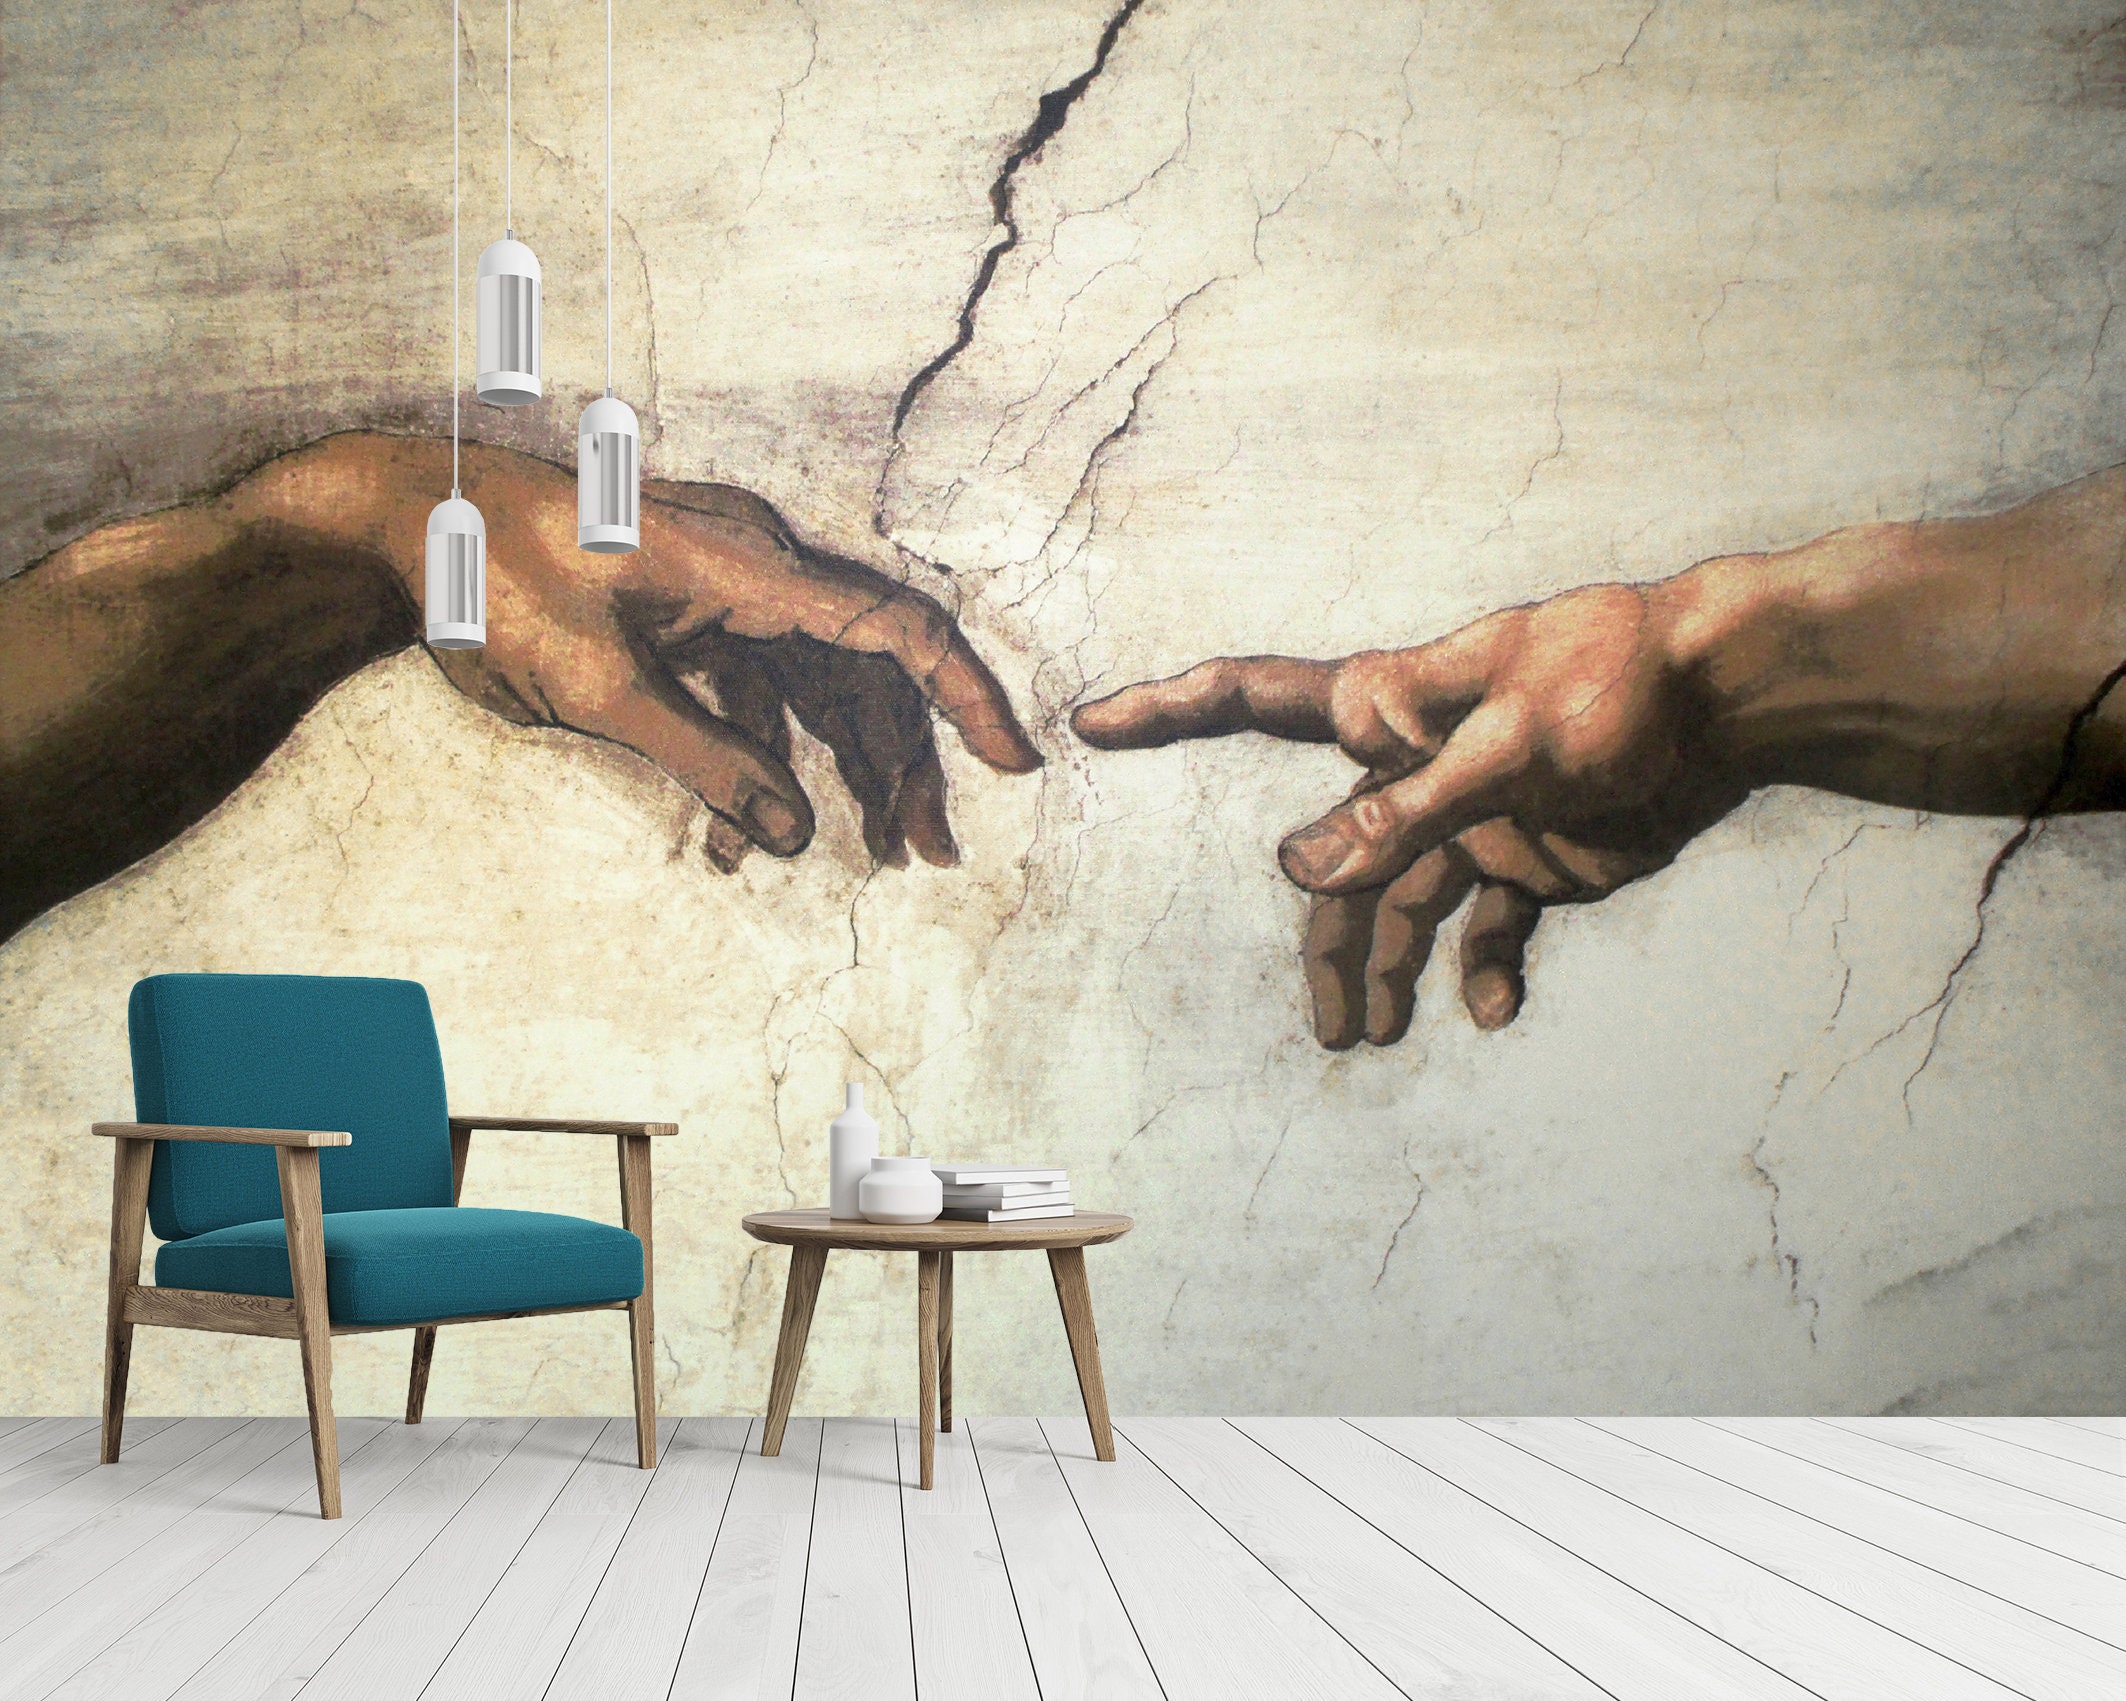 Michelangelo Finger of God Wall Mural Wallpaper Peel and Stick - Etsy  Australia